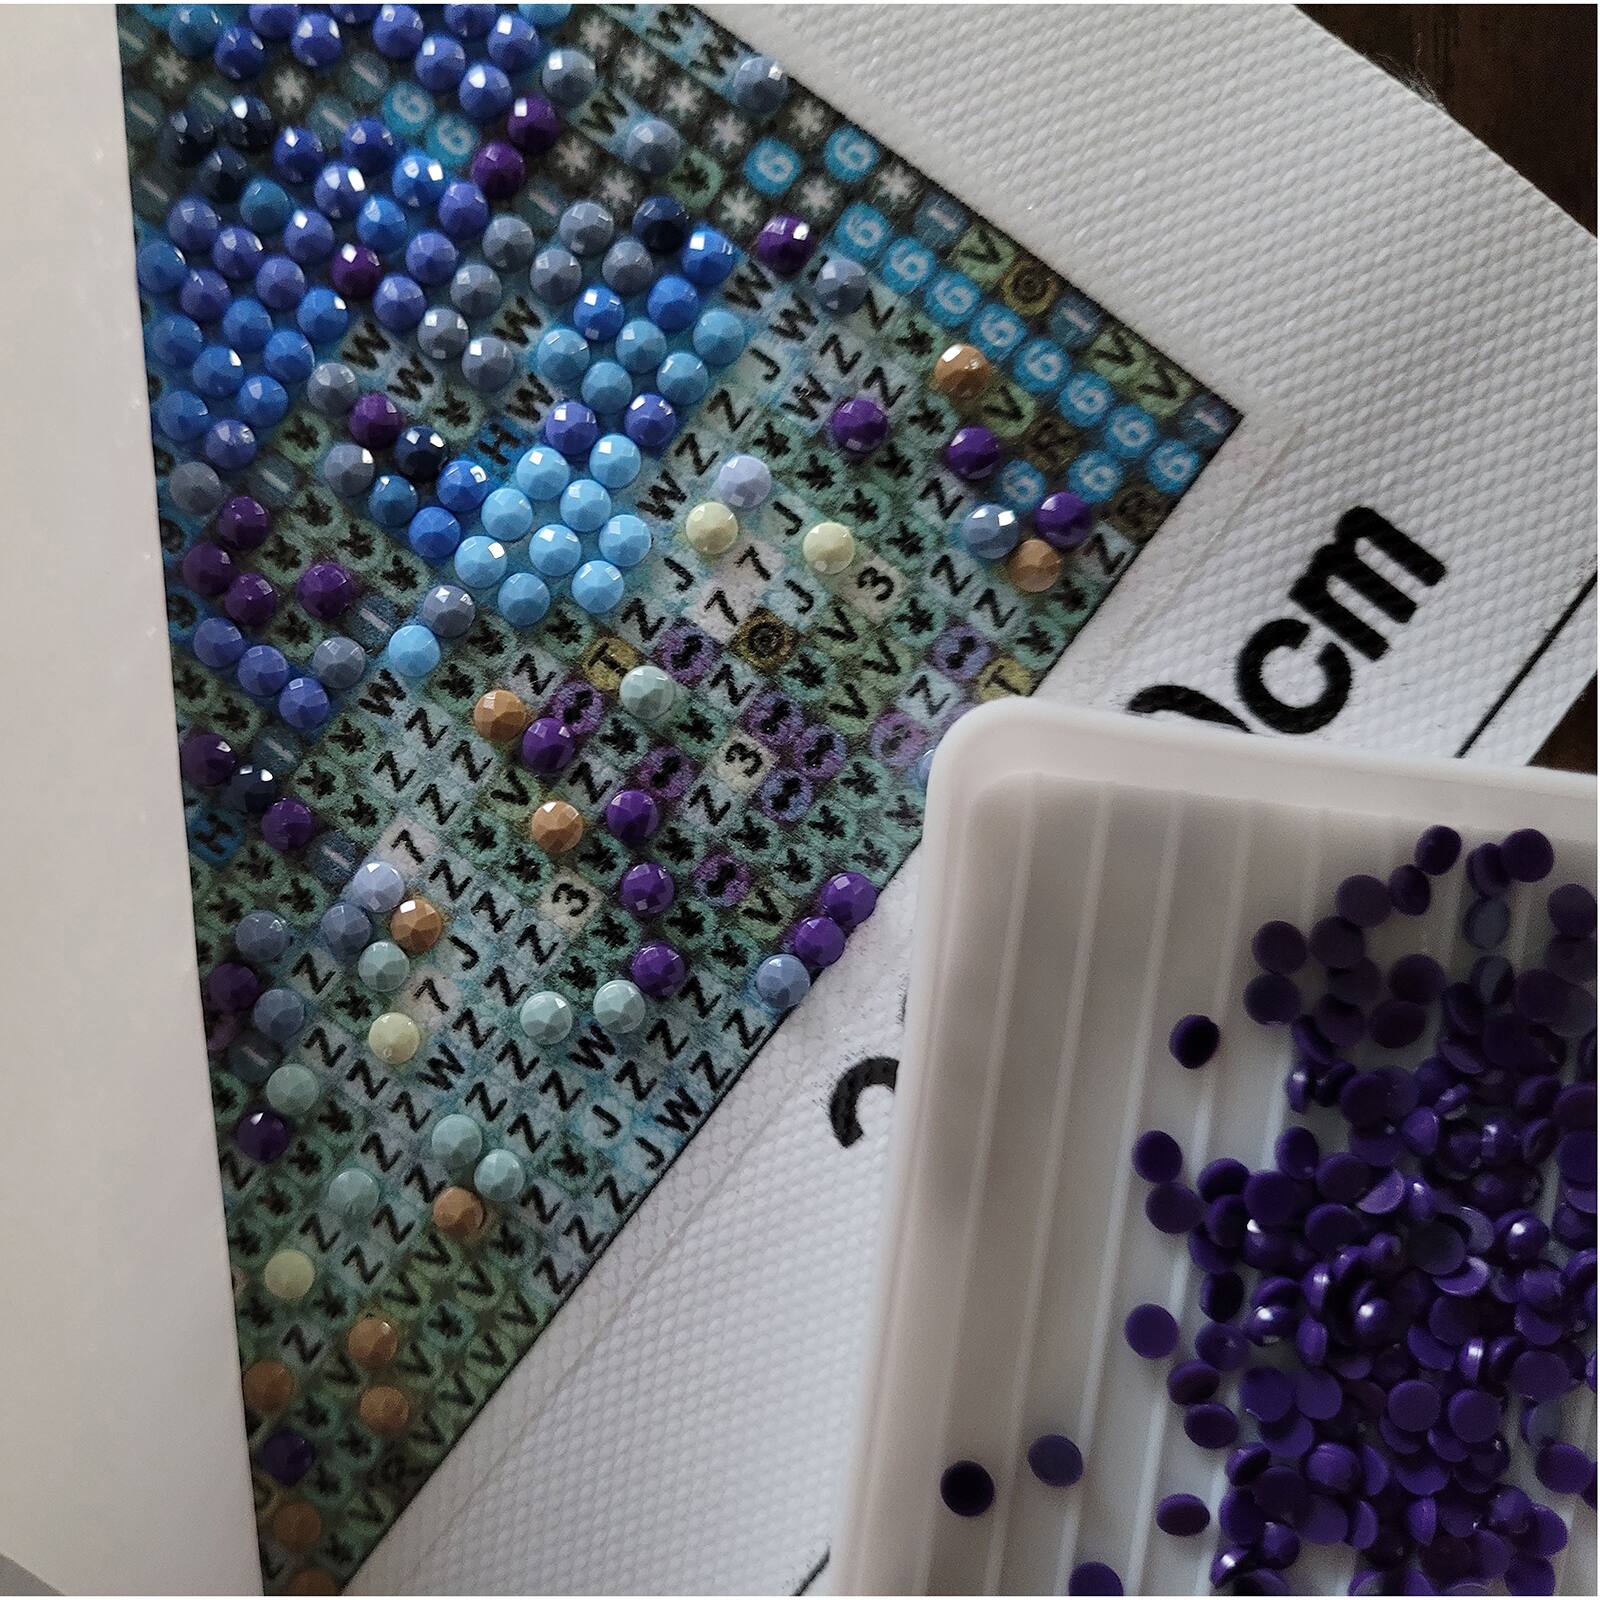 Sparkly Selections Beginner Space Unicorn Diamond Painting Kit, Round Diamonds